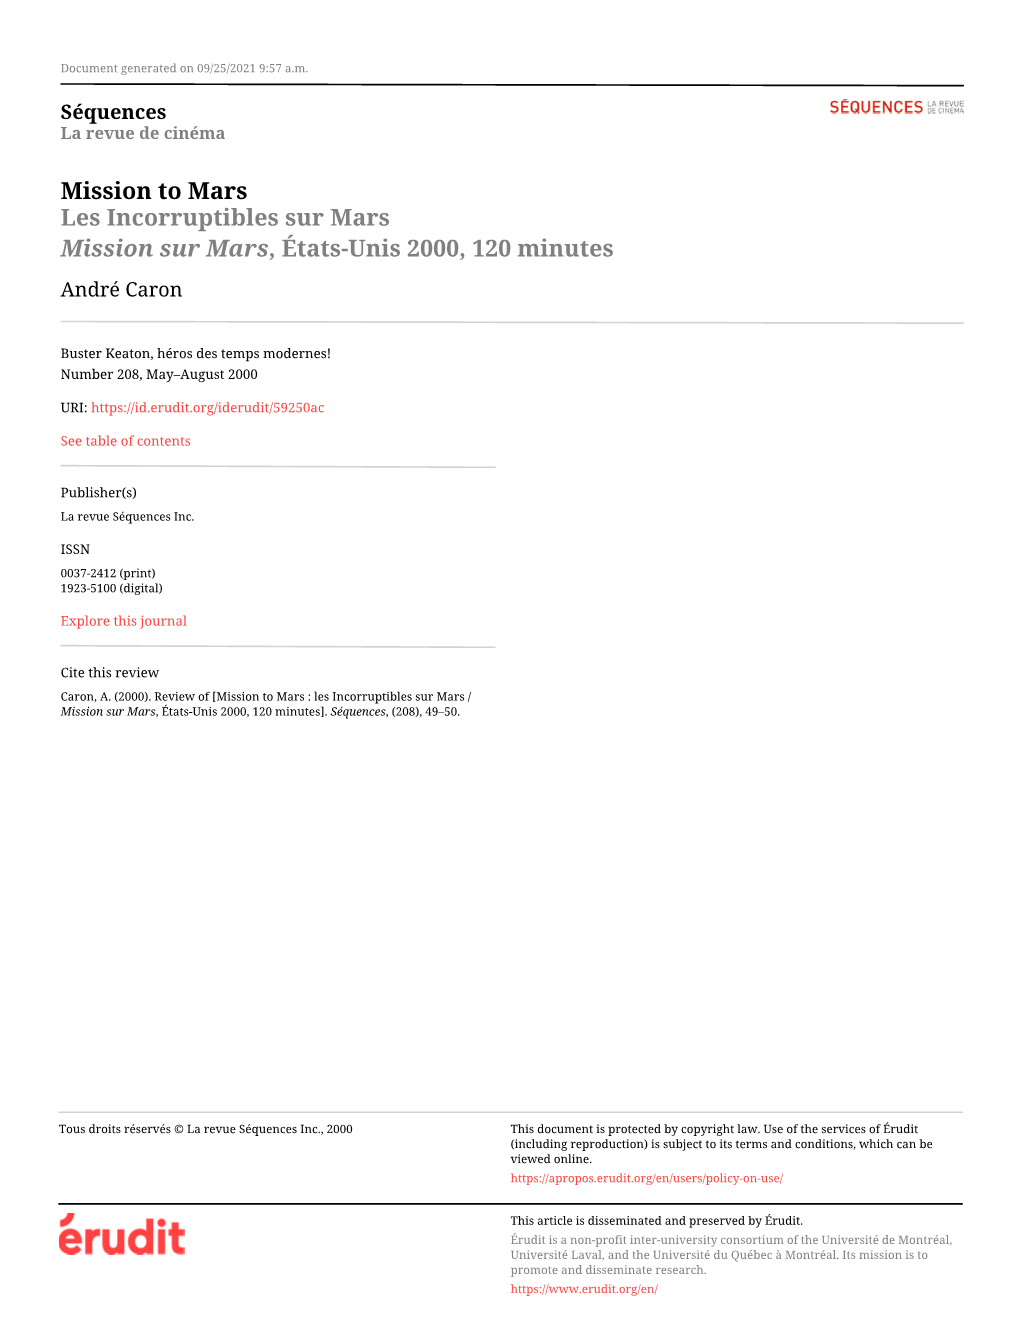 Les Incorruptibles Sur Mars / Mission Sur Mars, États-Unis 2000, 120 Minutes]